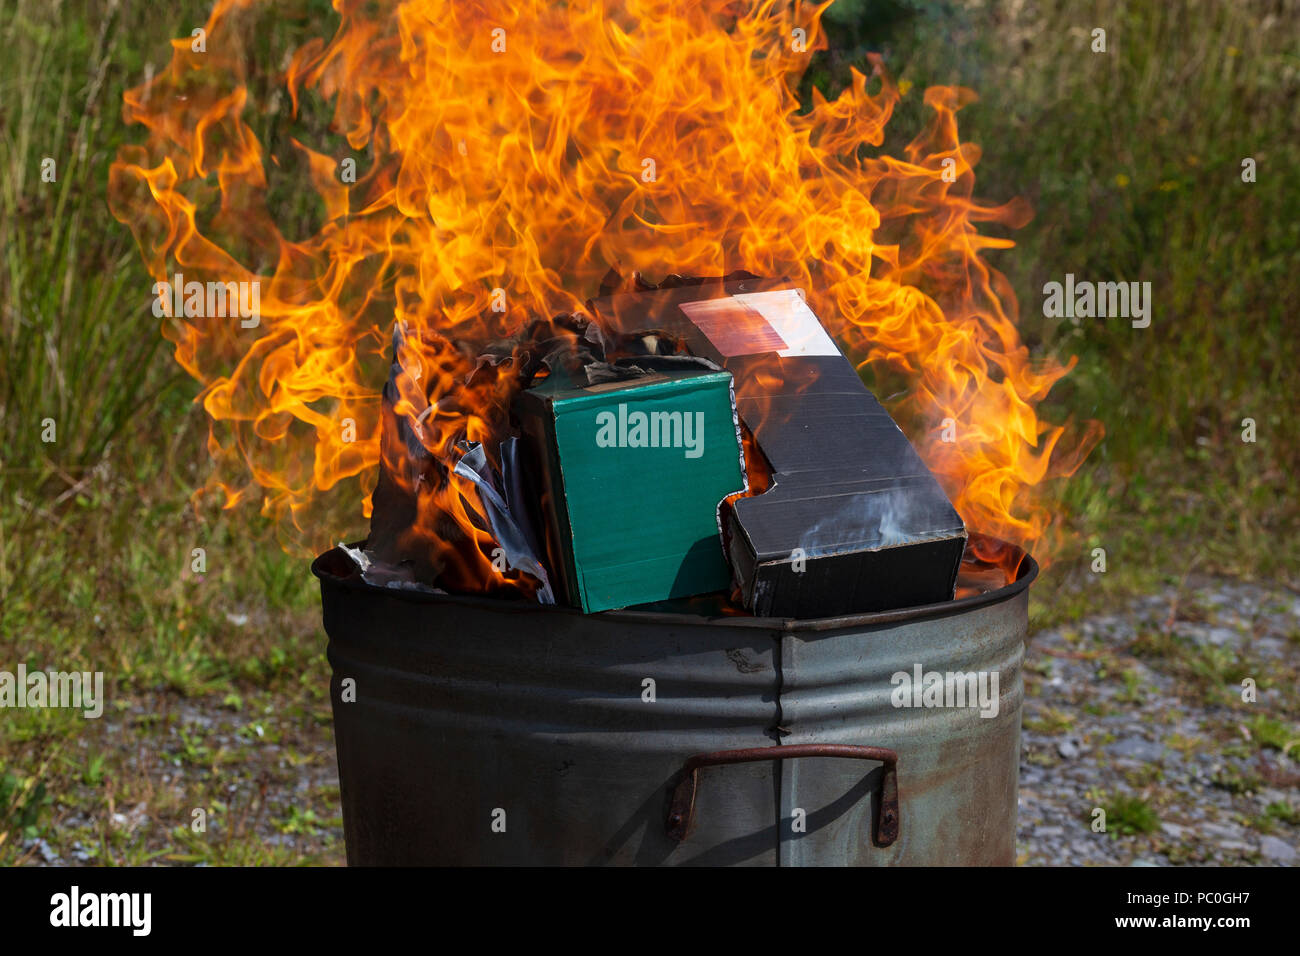 La quema de residuos de papel y cartón en el pequeño jardín incinerador Foto de stock